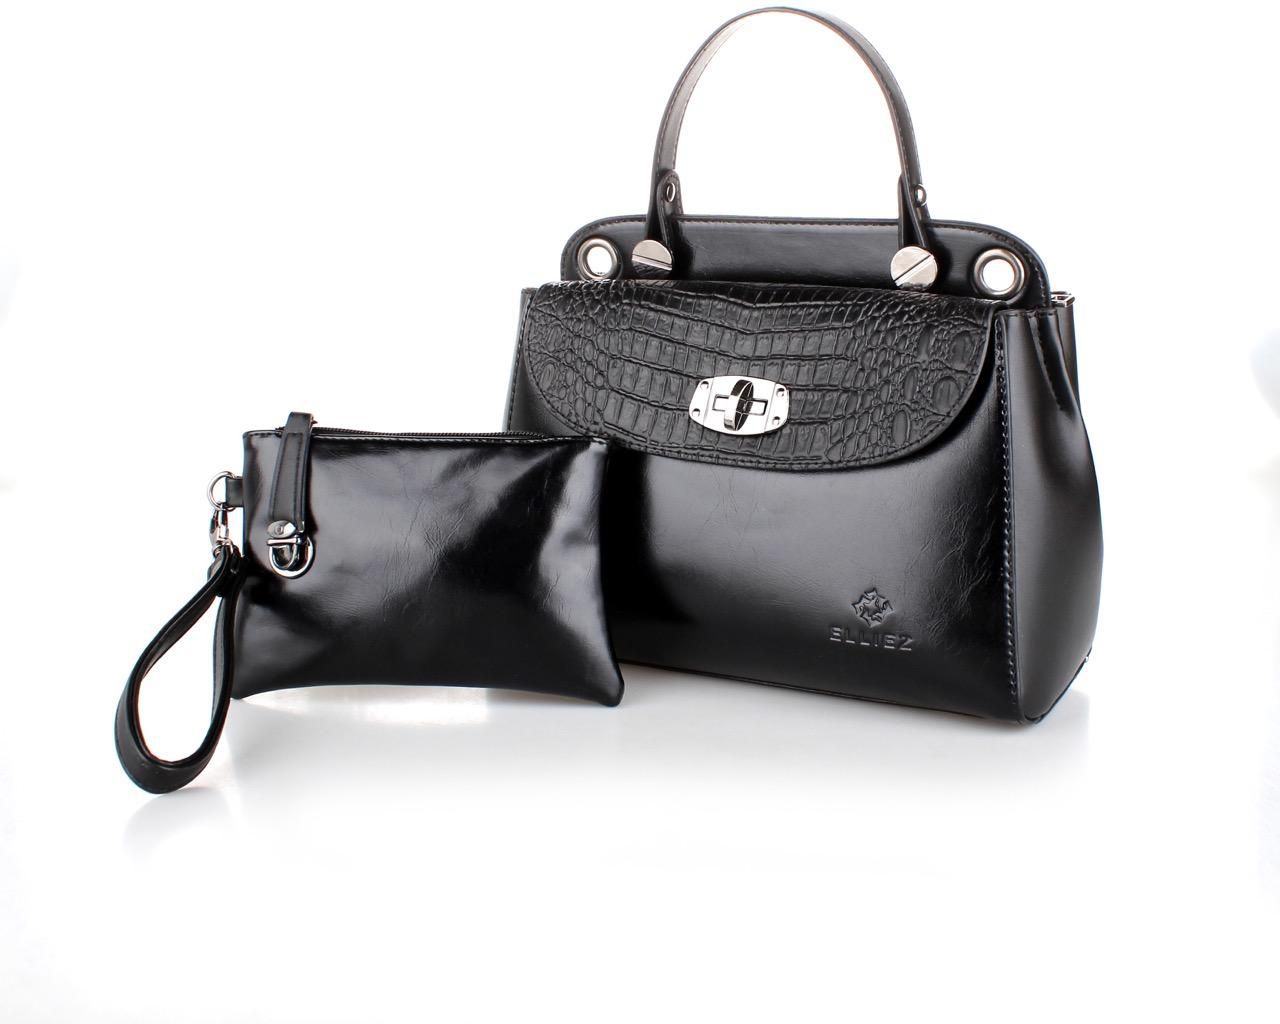 ELLIEZ Women Handbag Black Color